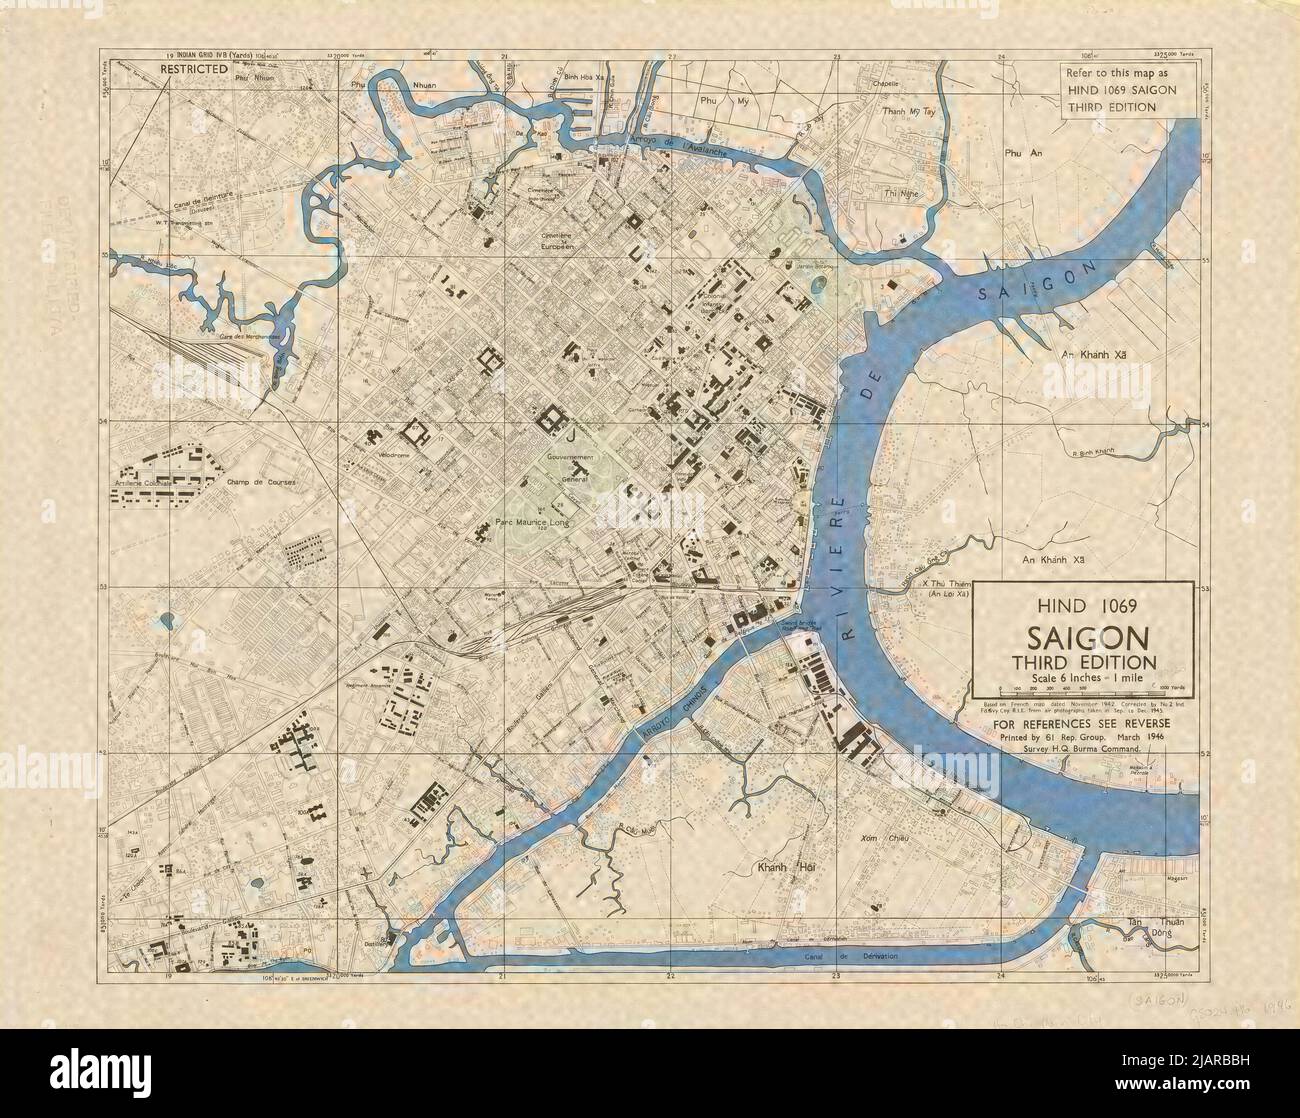 Mappa di Saigon 1946 - Mappa stampata in Birmania nel 1946 dal distaccamento di ricognizione aerea del comando Burma dell'esercito britannico. Questa mappa è stata disegnata sulla base della mappa francese stampata nel novembre 1942 e corretta da fotografie aeree scattate da settembre a dicembre 1945. Foto Stock